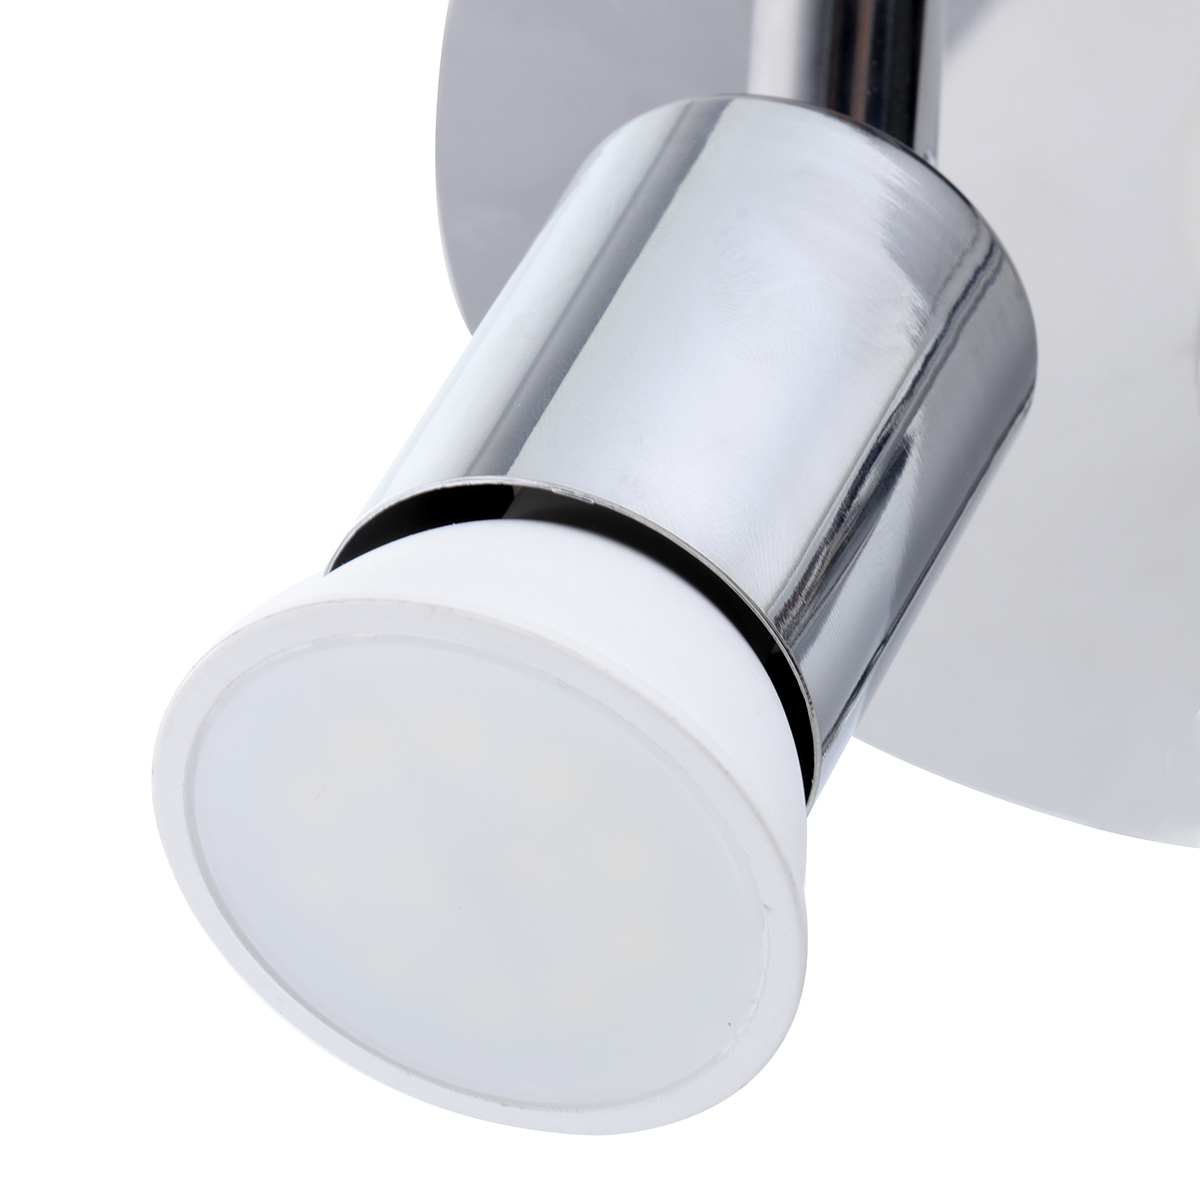 Elfeland 100-220V 3 Way GU10 LED Rotatable Ceiling Light Lamp Bulb Spotlight Fitting Home Lighting